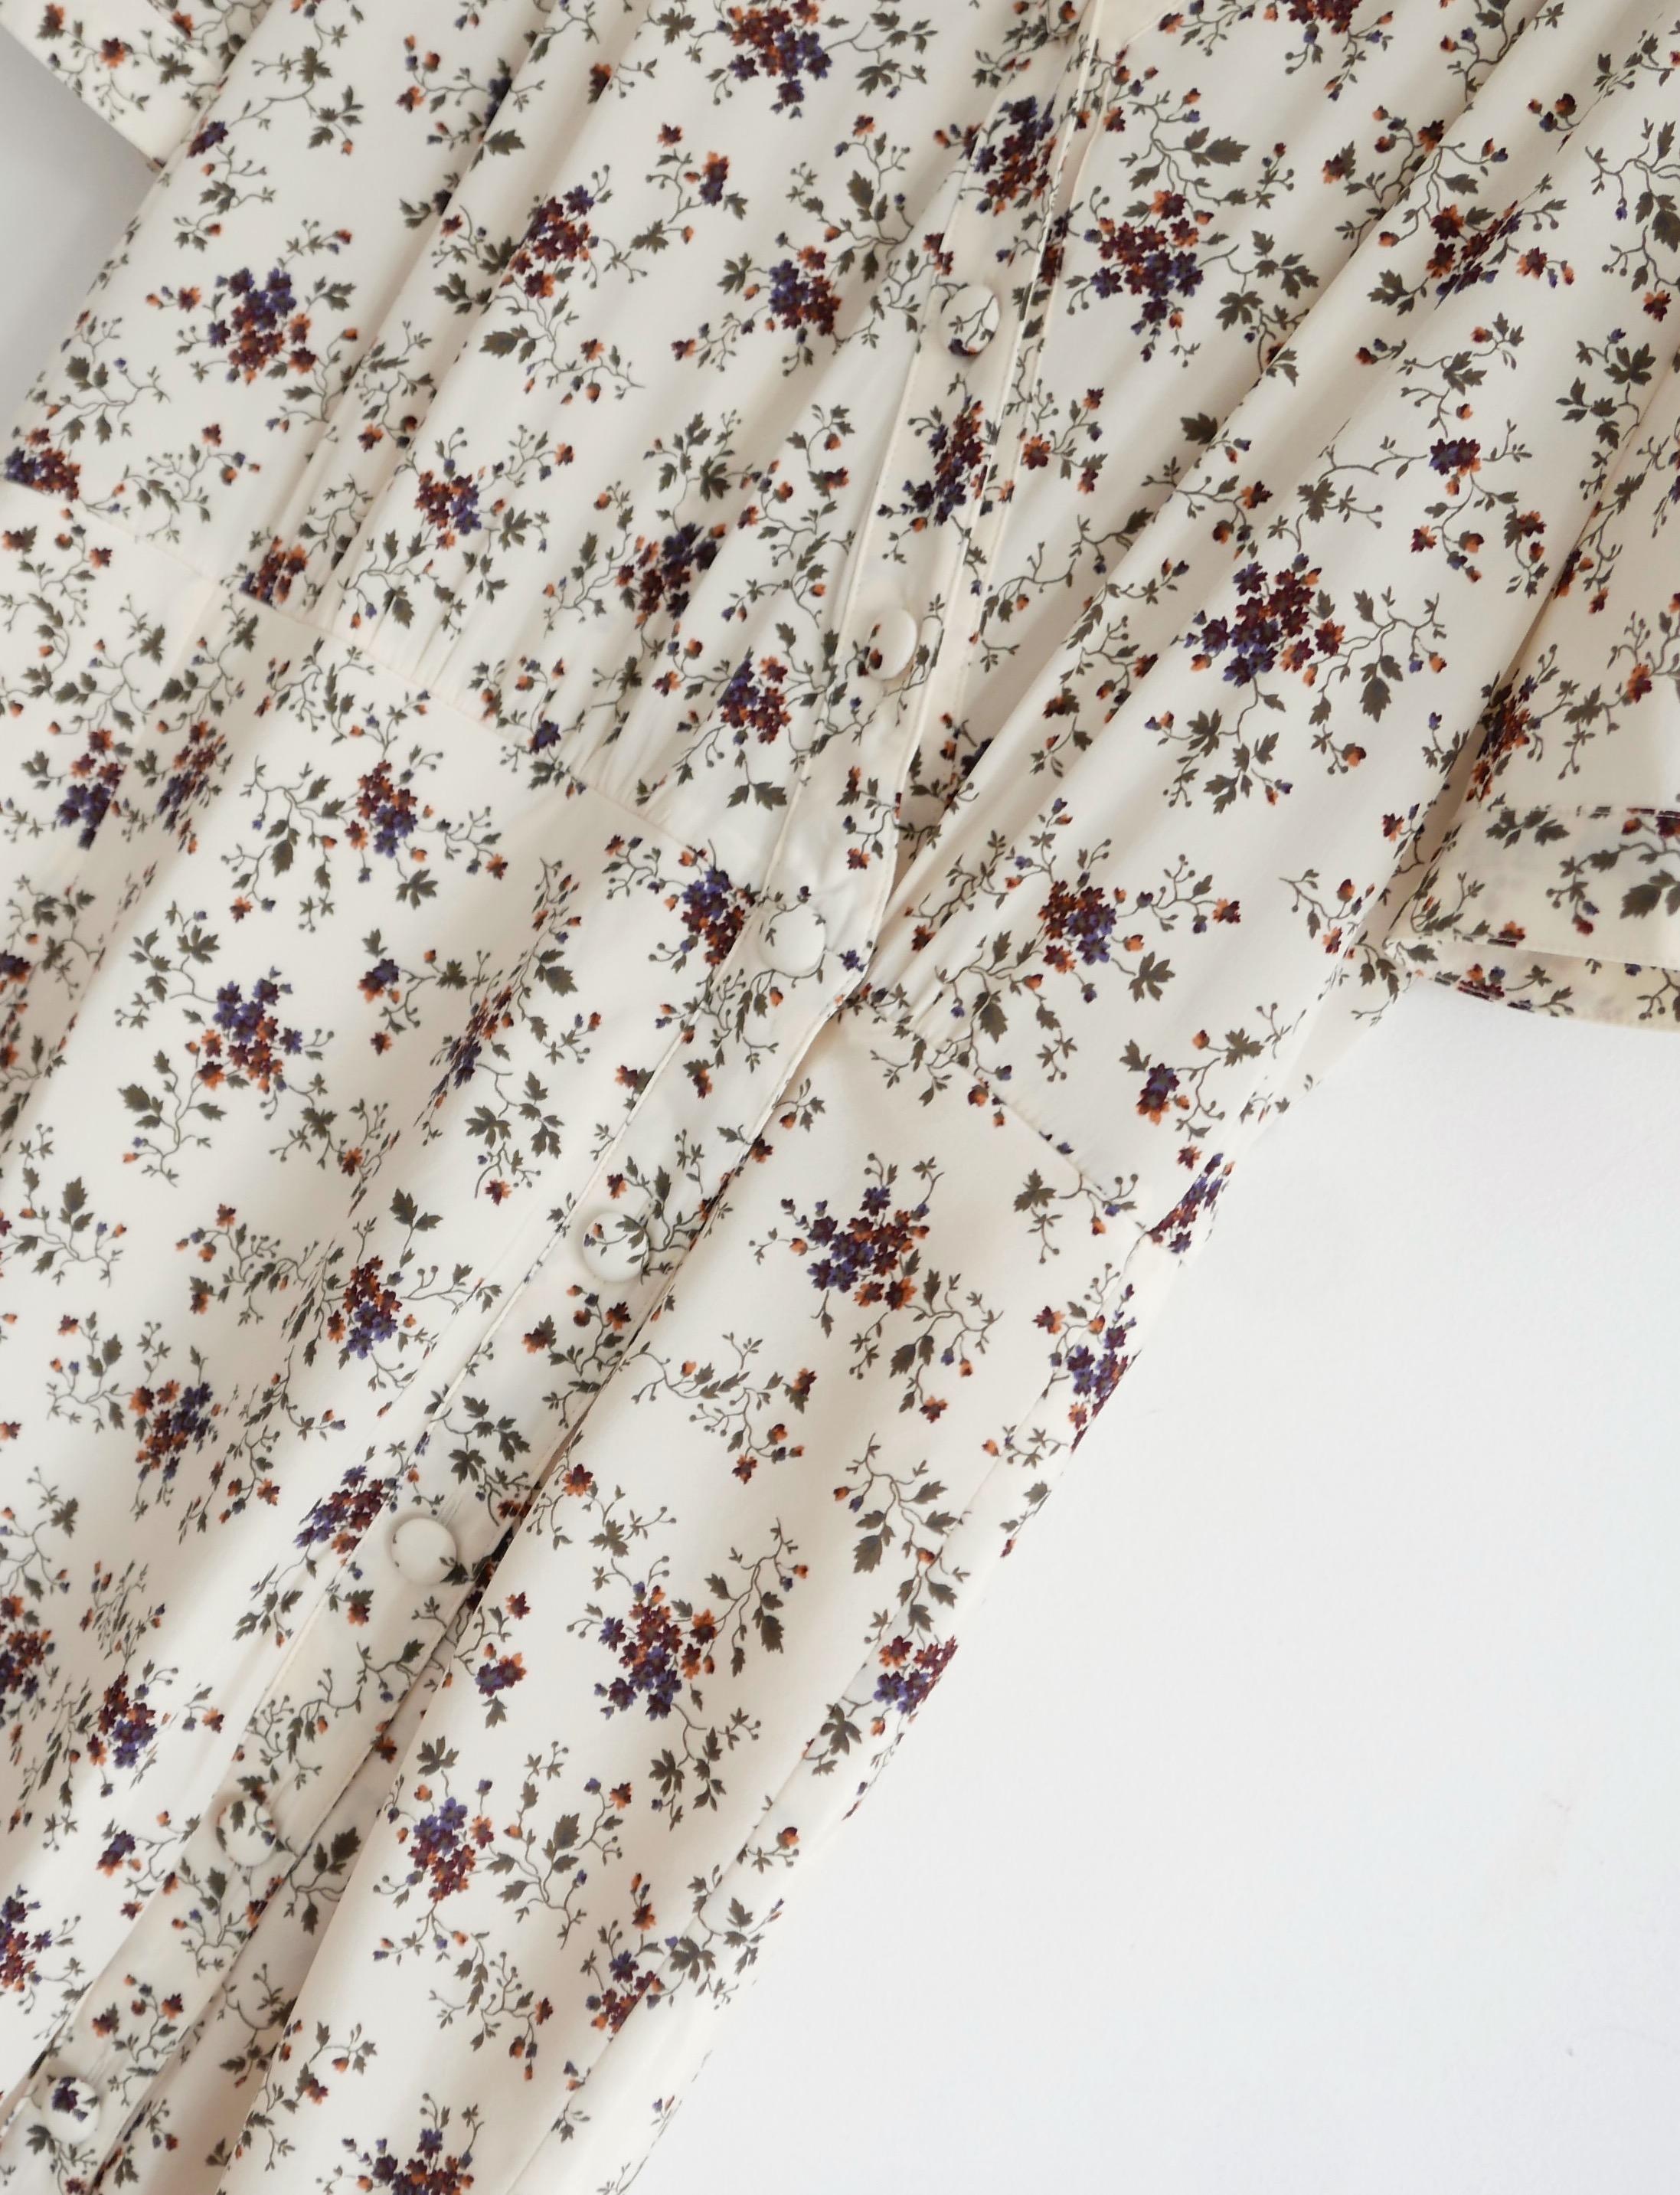 Magnifique Mika de Veronica Beard d'inspiration vintage  robe - achetée pour £575 et neuve avec étiquettes/boutons de rechange. Fabriqué en soie douce Whitestone et spandex avec un délicat imprimé floral printanier. Elle présente une coupe robe de